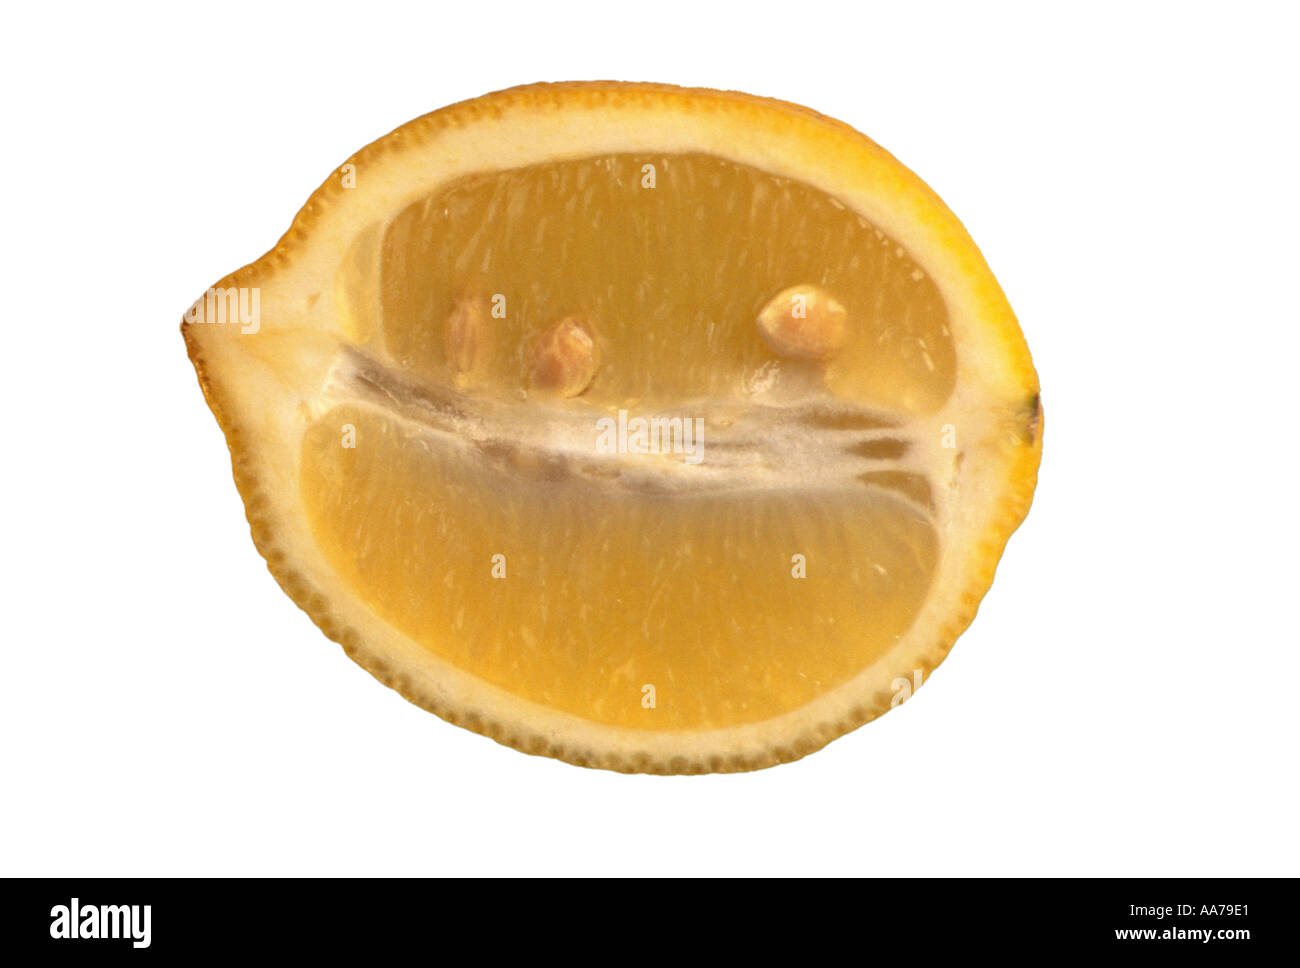 Les fruits d'agrumes citrons citron jaune alimentaire acide sulfureux sur fond blanc zitrone zitronen Banque D'Images